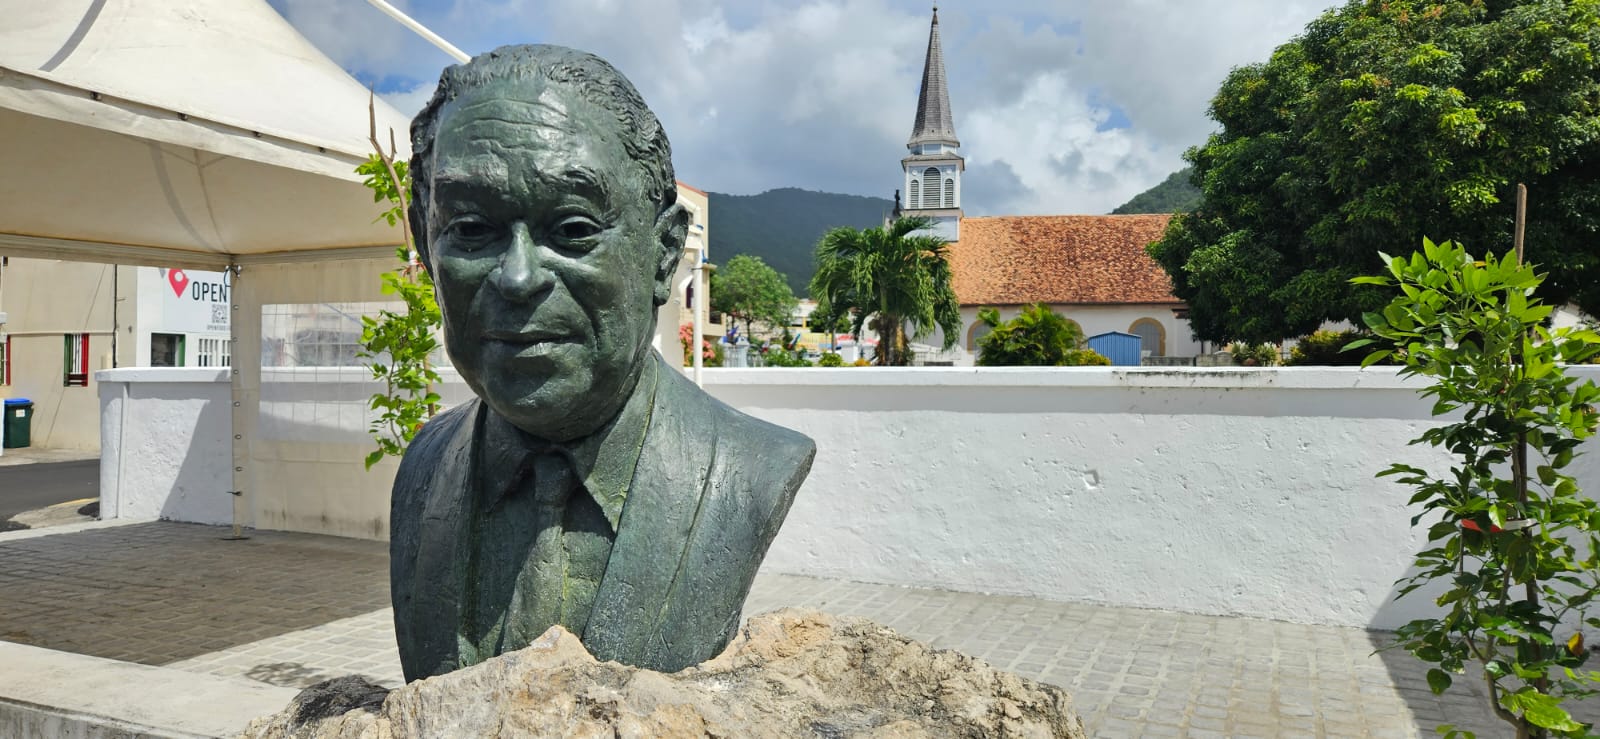     Le 4ème buste de France de Gaston Monnerville inauguré à Case-Pilote

